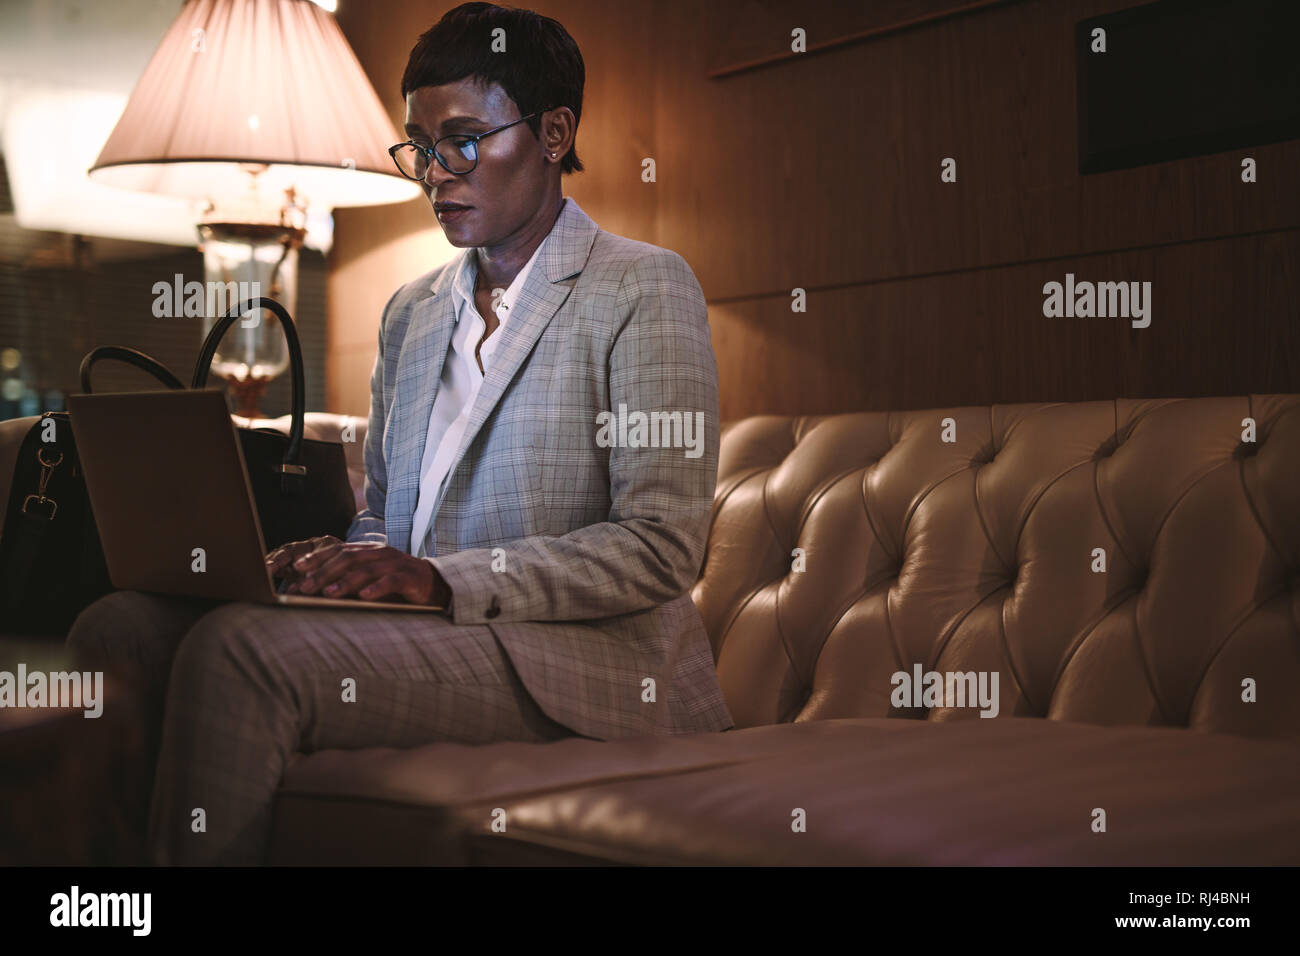 Geschäftsfrau im Hotel Lobby sitzen und Arbeiten am Laptop. Afrikanische Frauen CEO auf Geschäft Tour mit Laptop in der Lobby des Hotels. Stockfoto